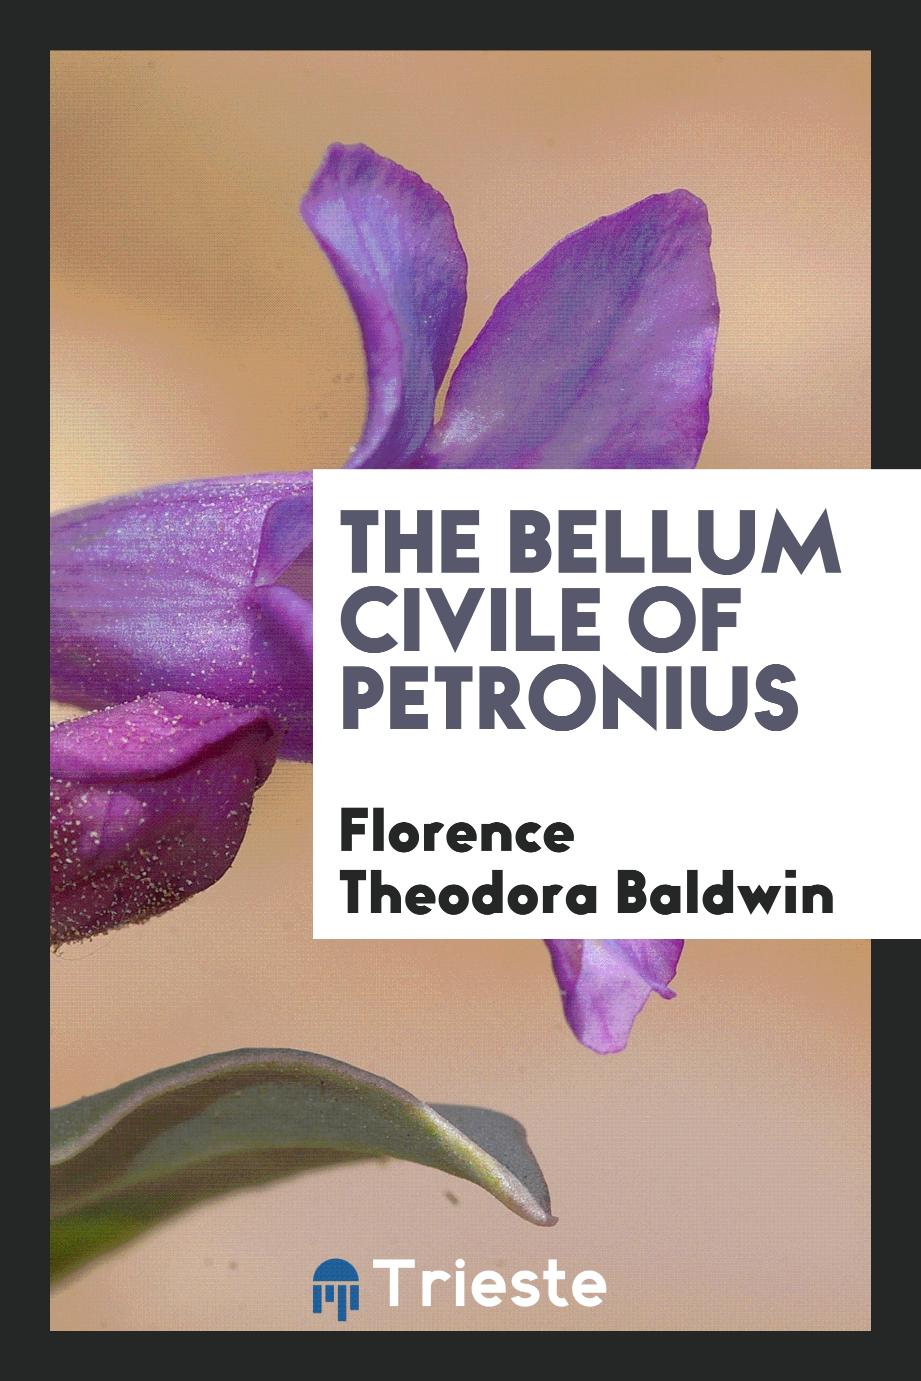 The Bellum civile of Petronius